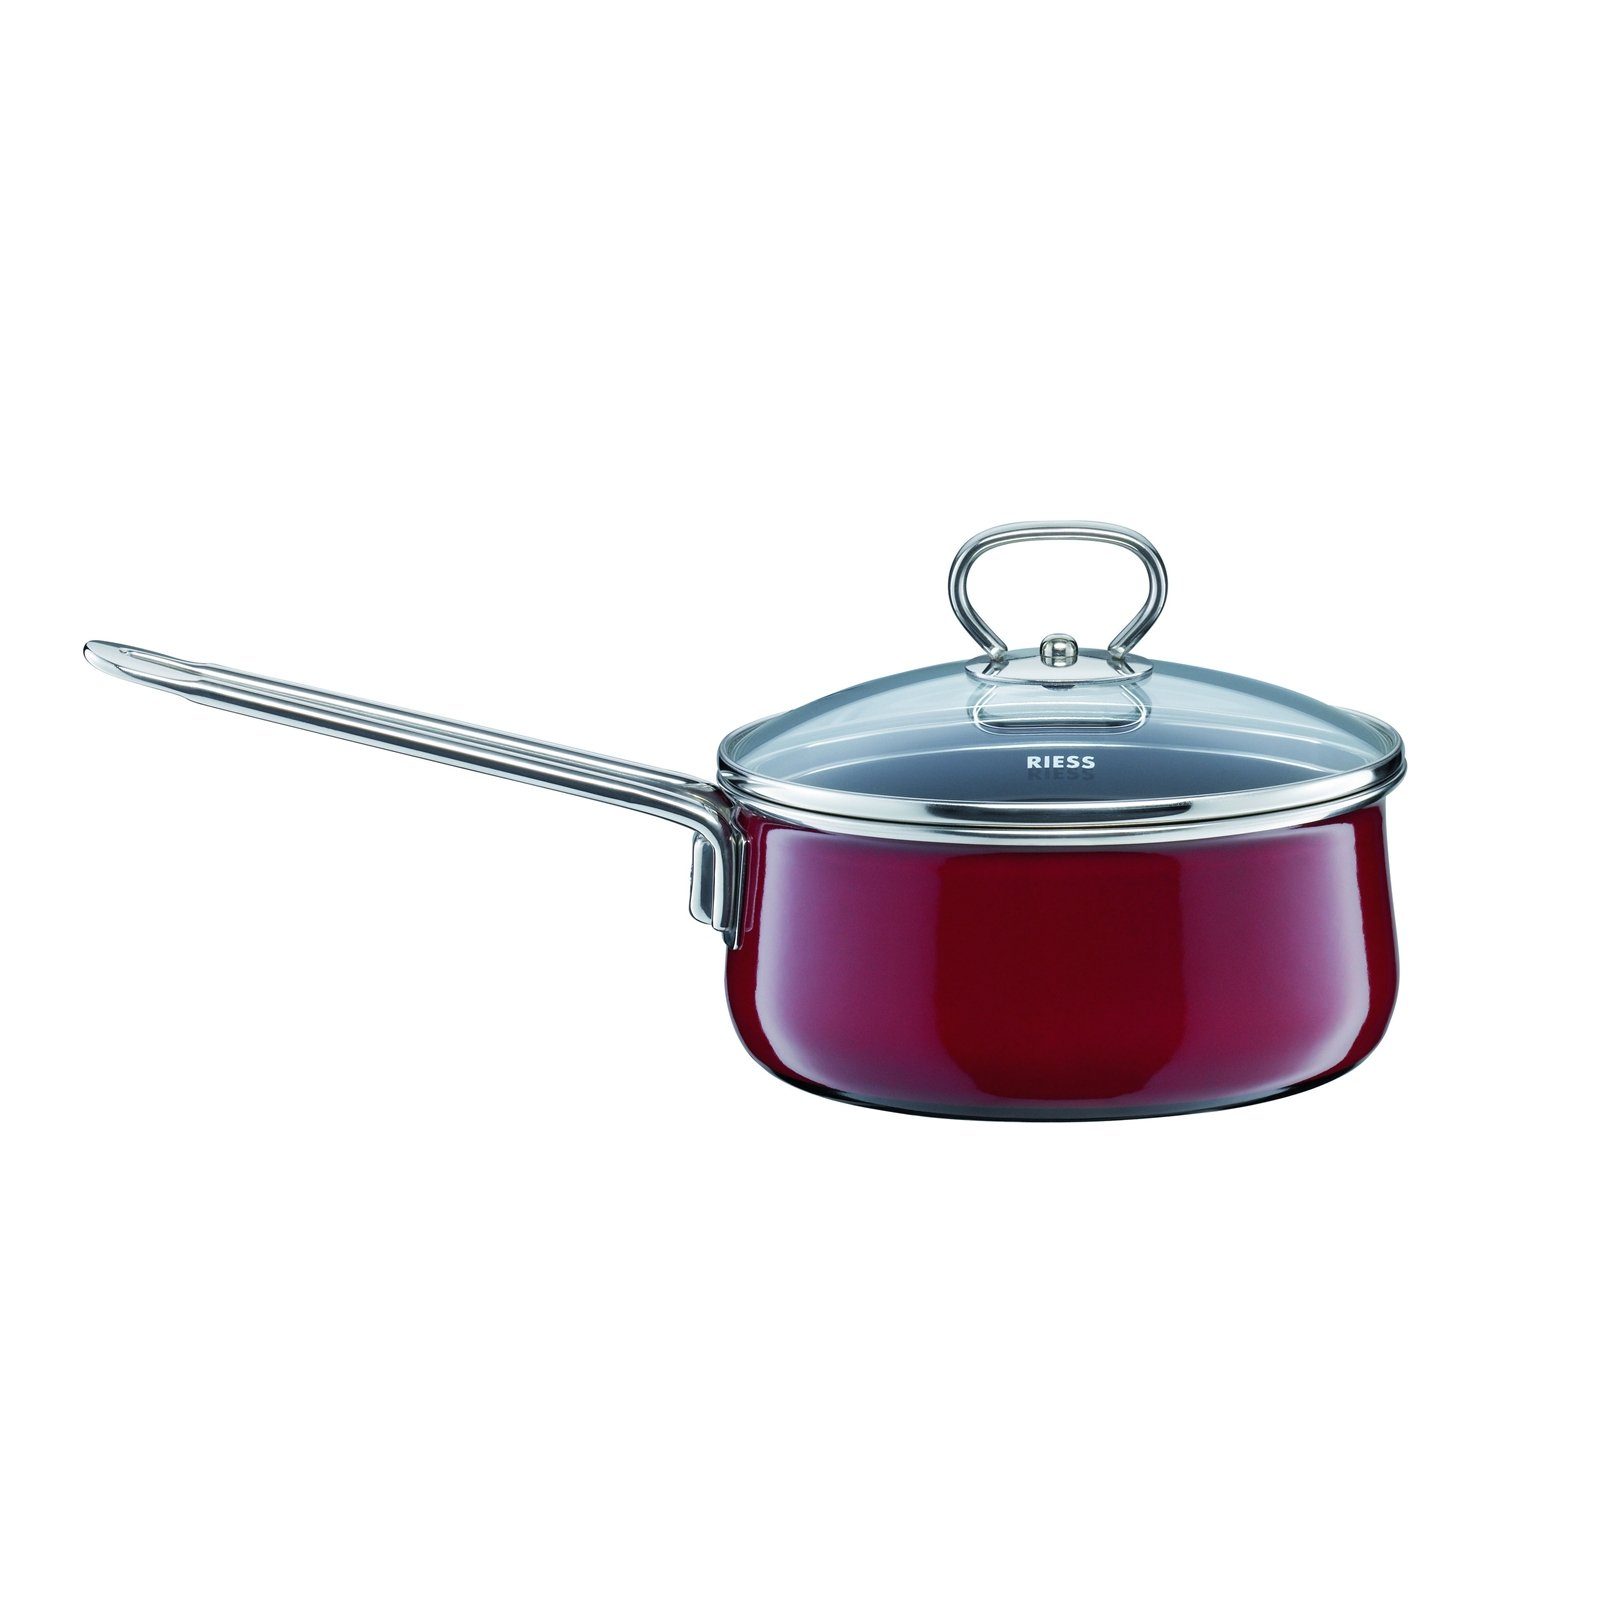 Riess Kasserolle Stielkasserolle mit Glasdeckel 16 cm Rosso, Premium-Email, Empfohlen bei Nickelallergie